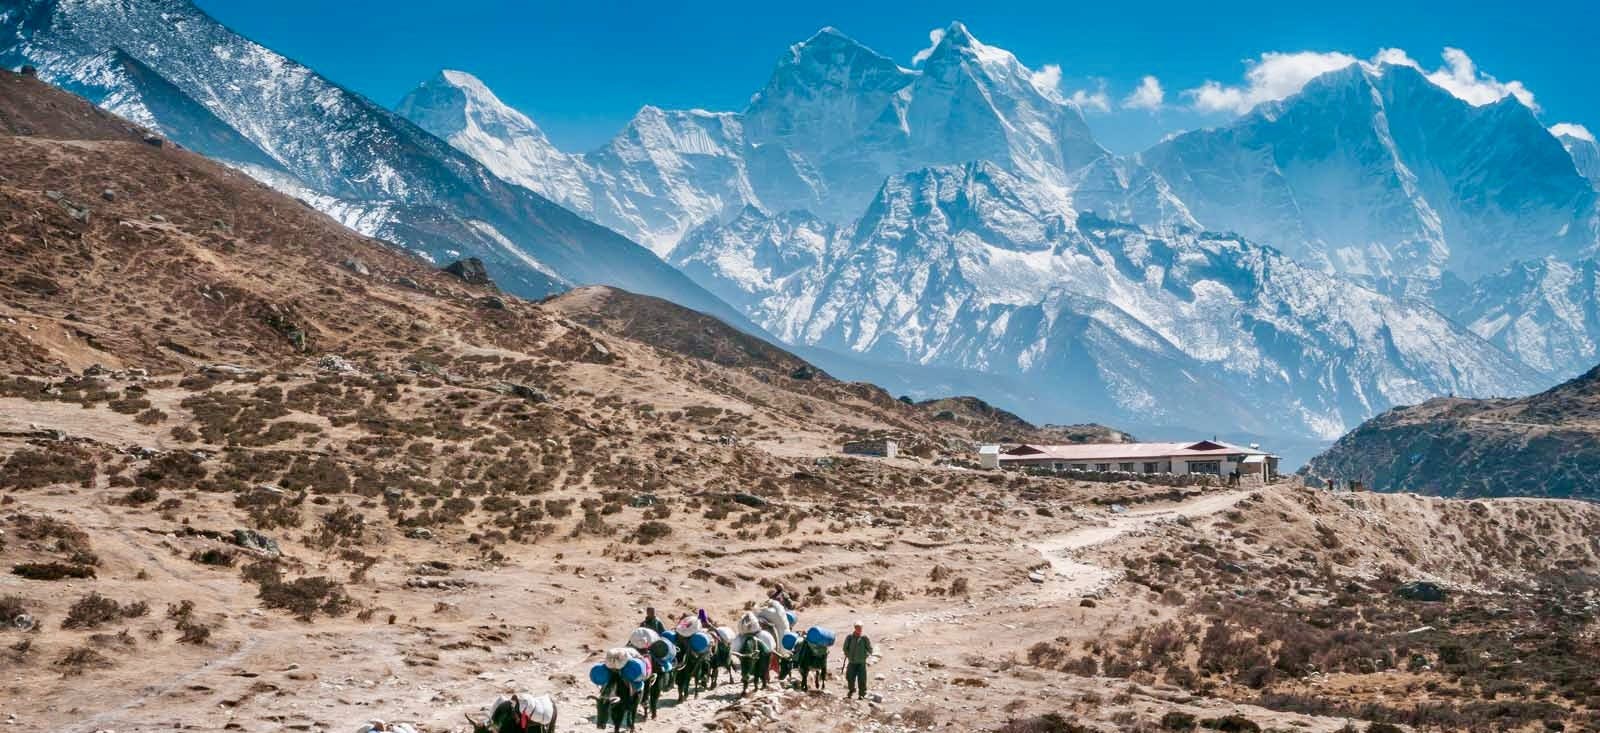 How safe is Everest Base Camp Trek?